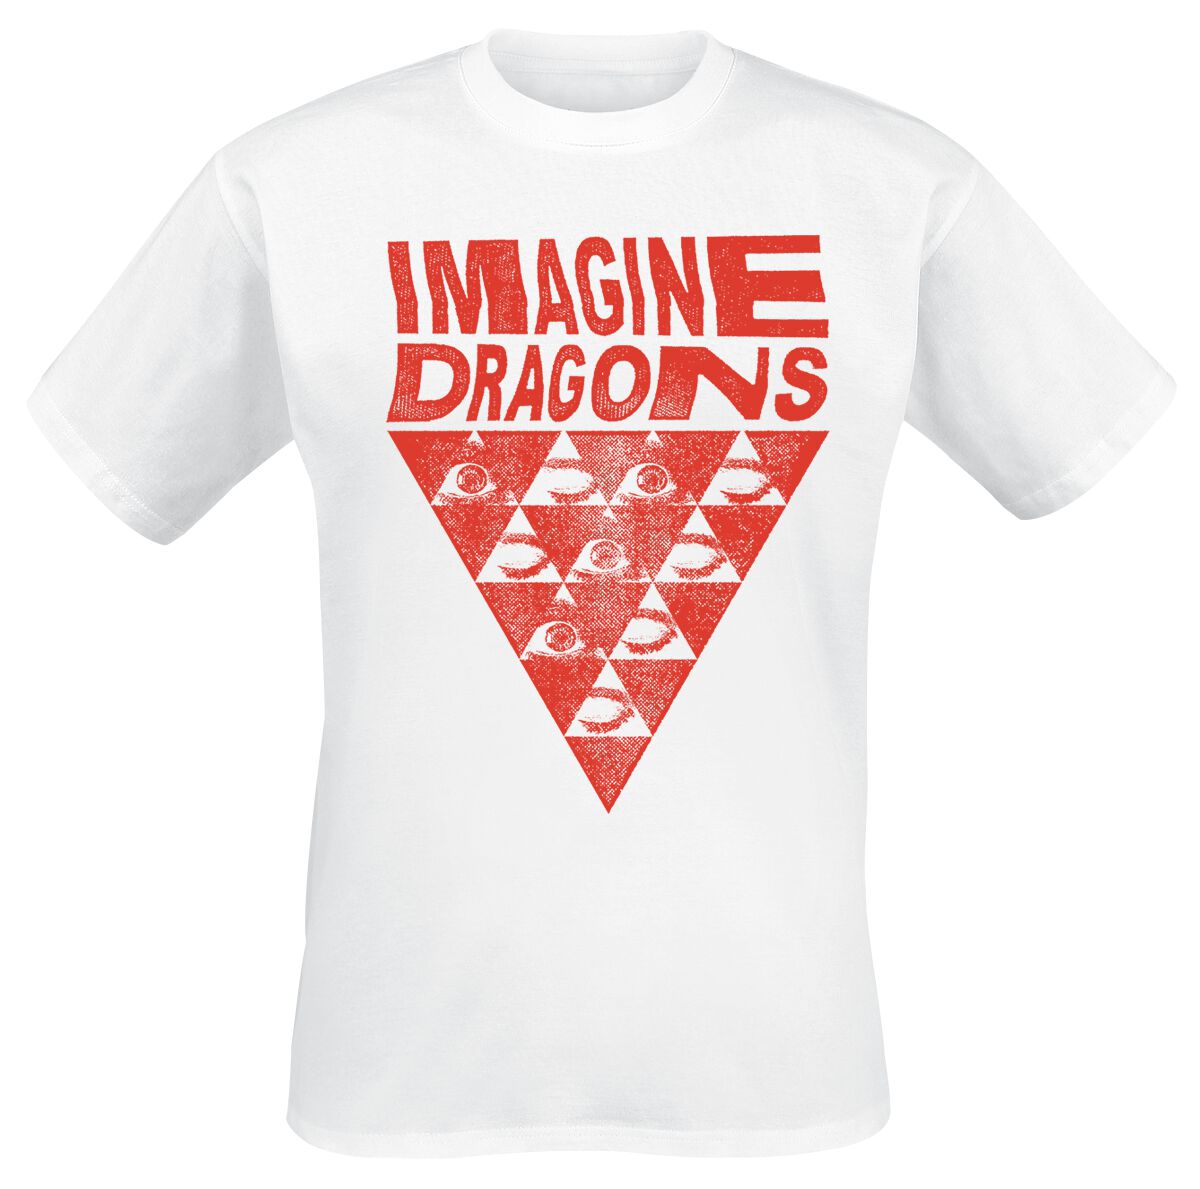 Imagine Dragons T-Shirt - Eyes - S bis 3XL - für Männer - Größe XXL - weiß  - Lizenziertes Merchandise! - Männer - male